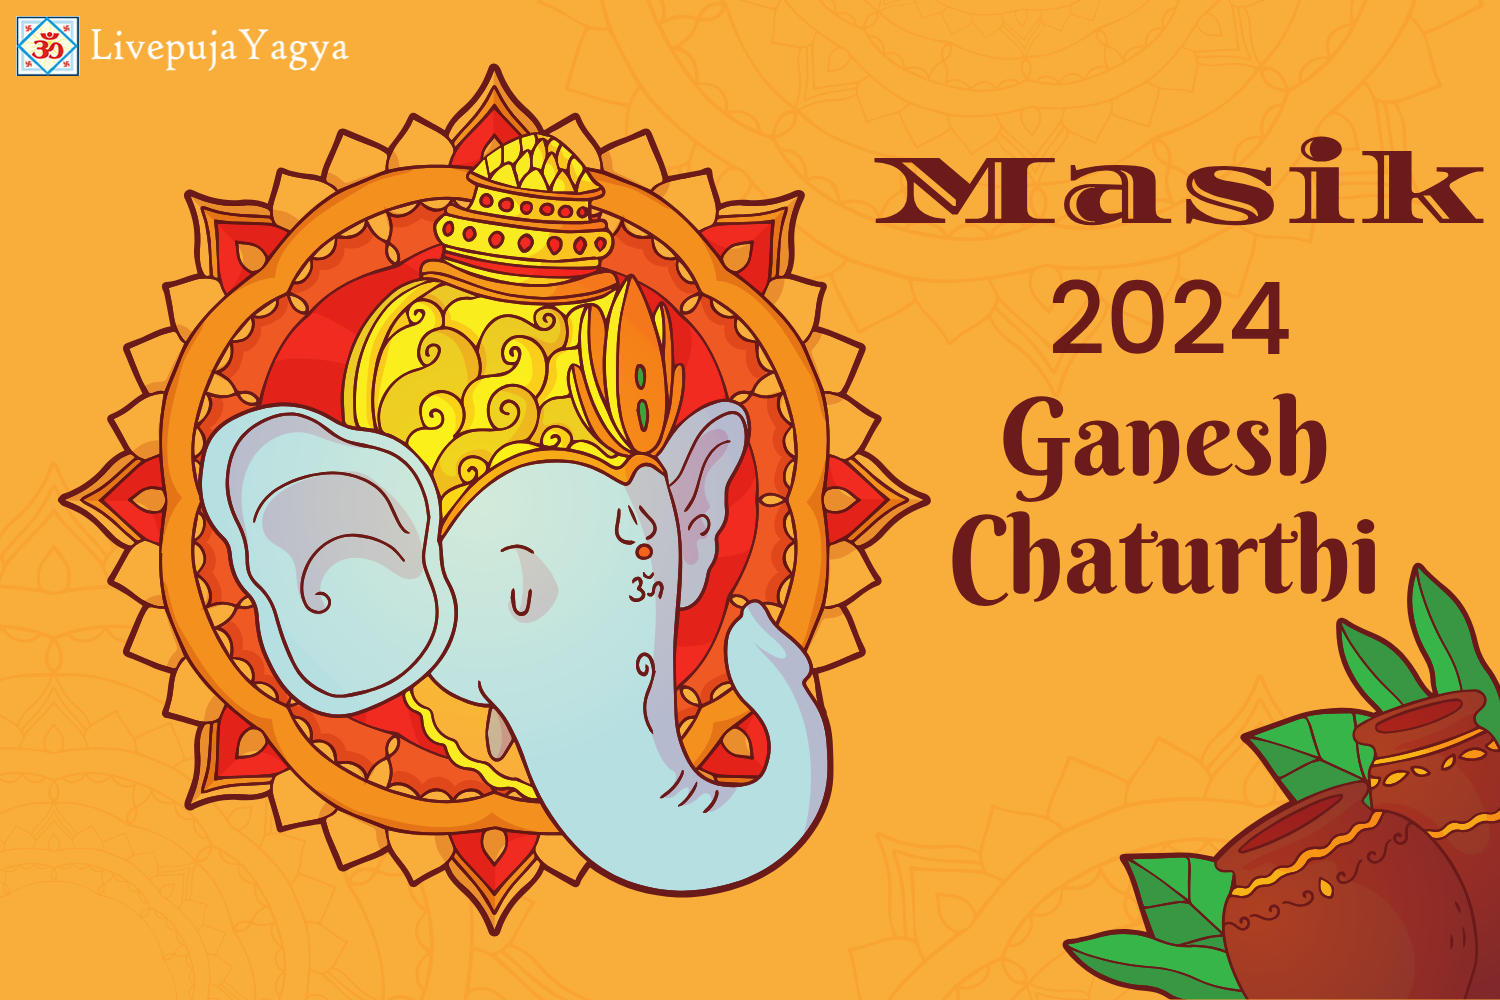 Masik Ganesh Chaturthi 2024 Dates